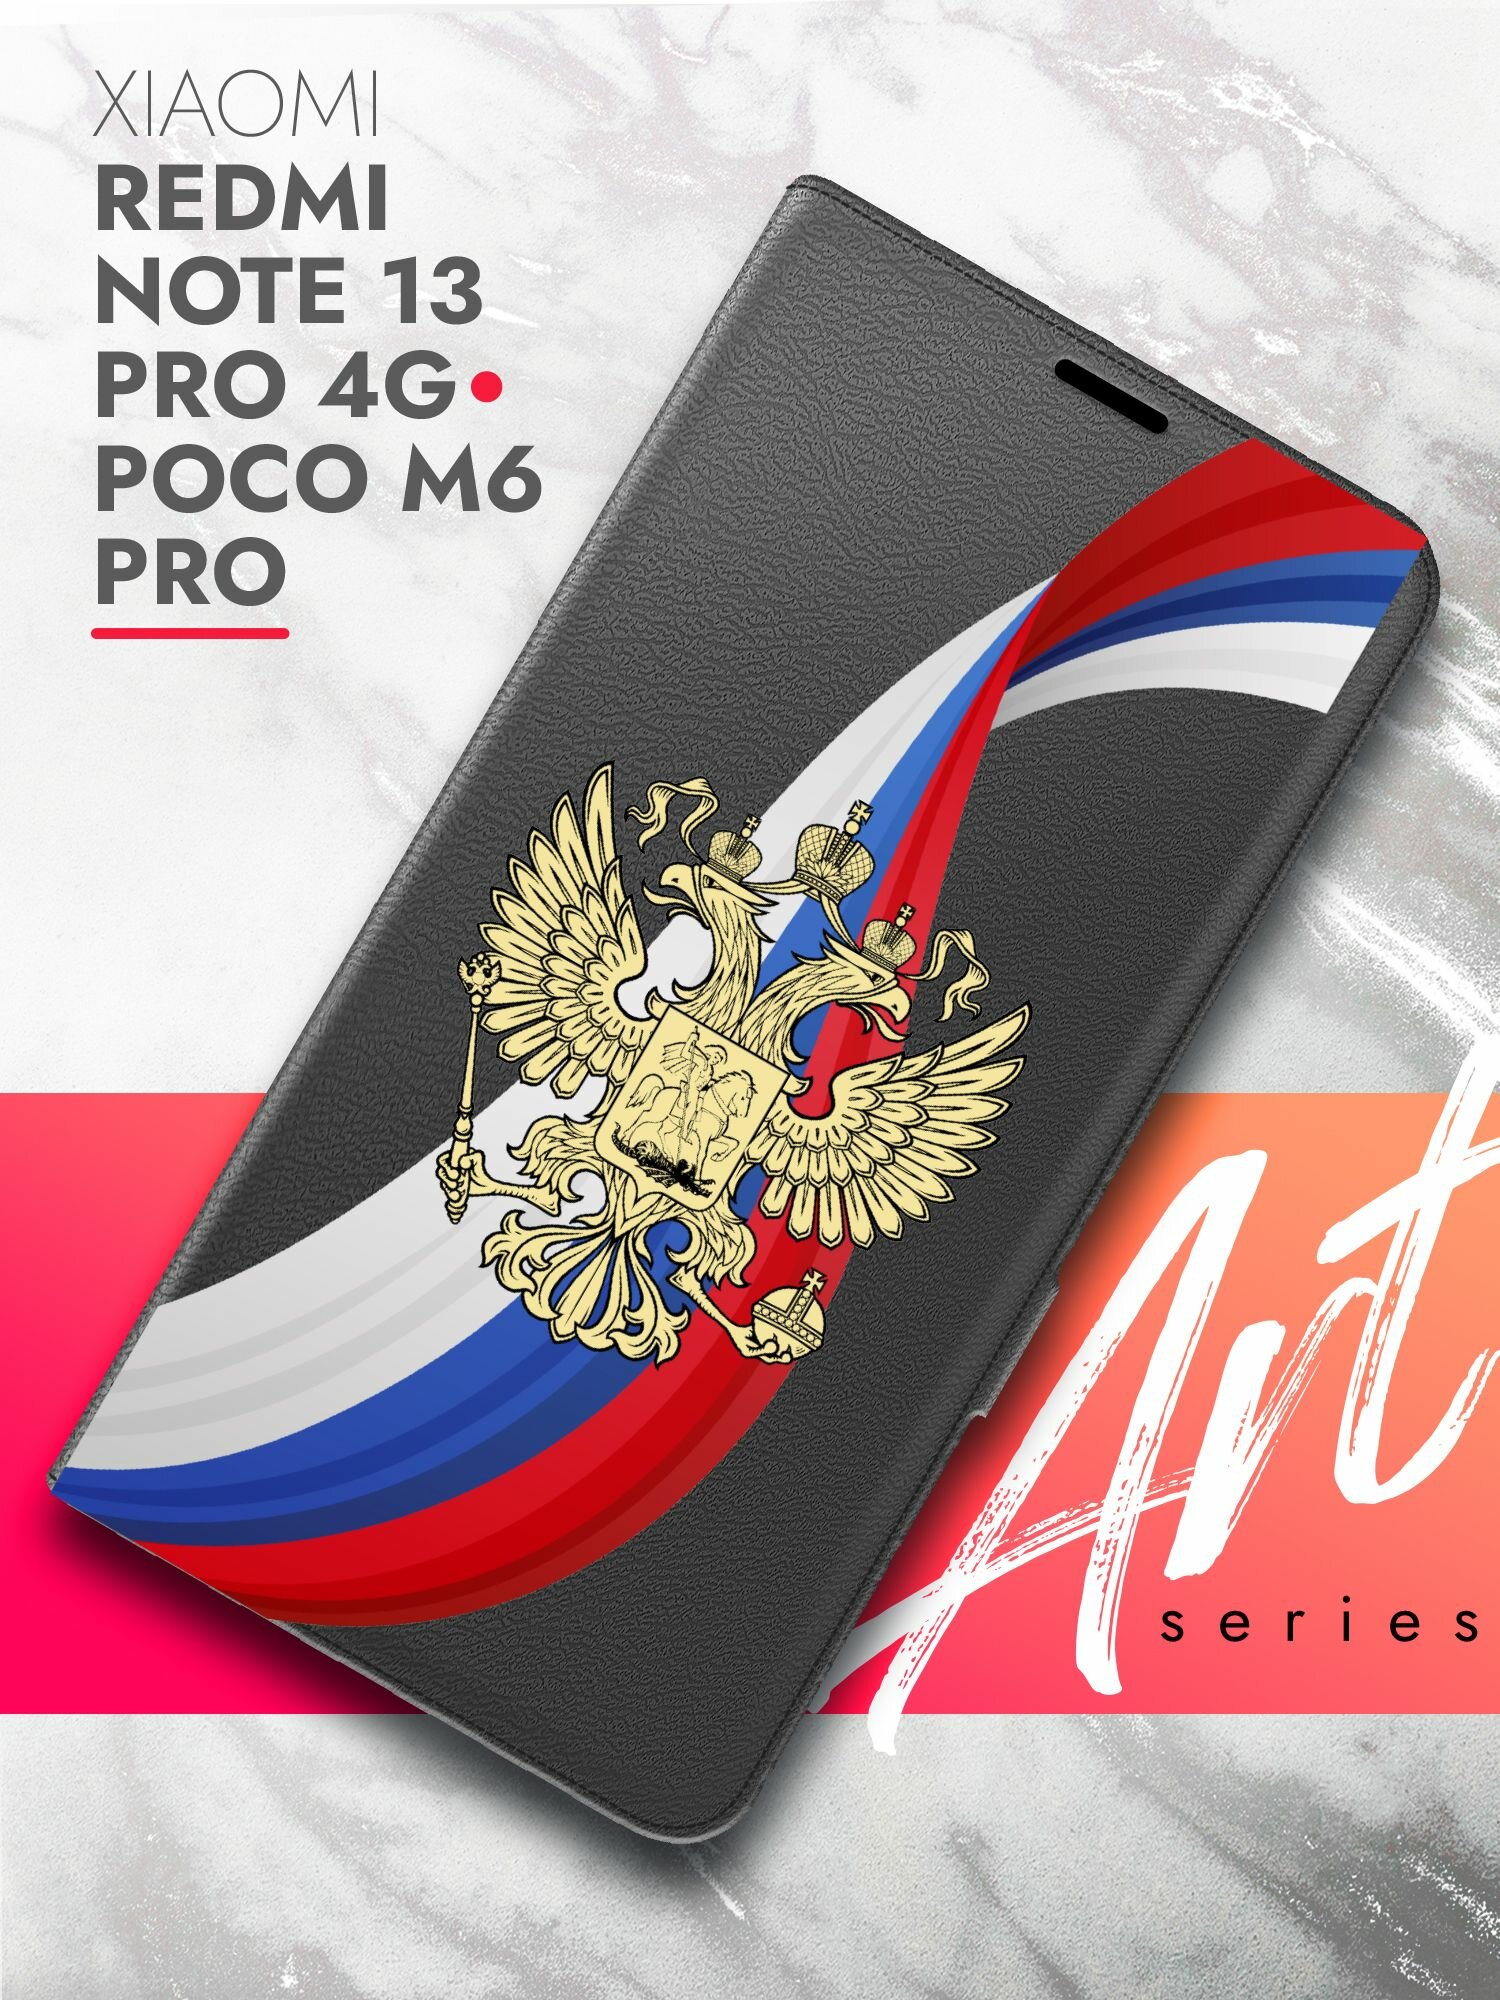 Чехол на Xiaomi Redmi Note 13 Pro 4G/Poco M6 Pro черный книжка эко-кожа подставка отделение для карт магнит Book case, Brozo (принт) Россия Флаг-Лента